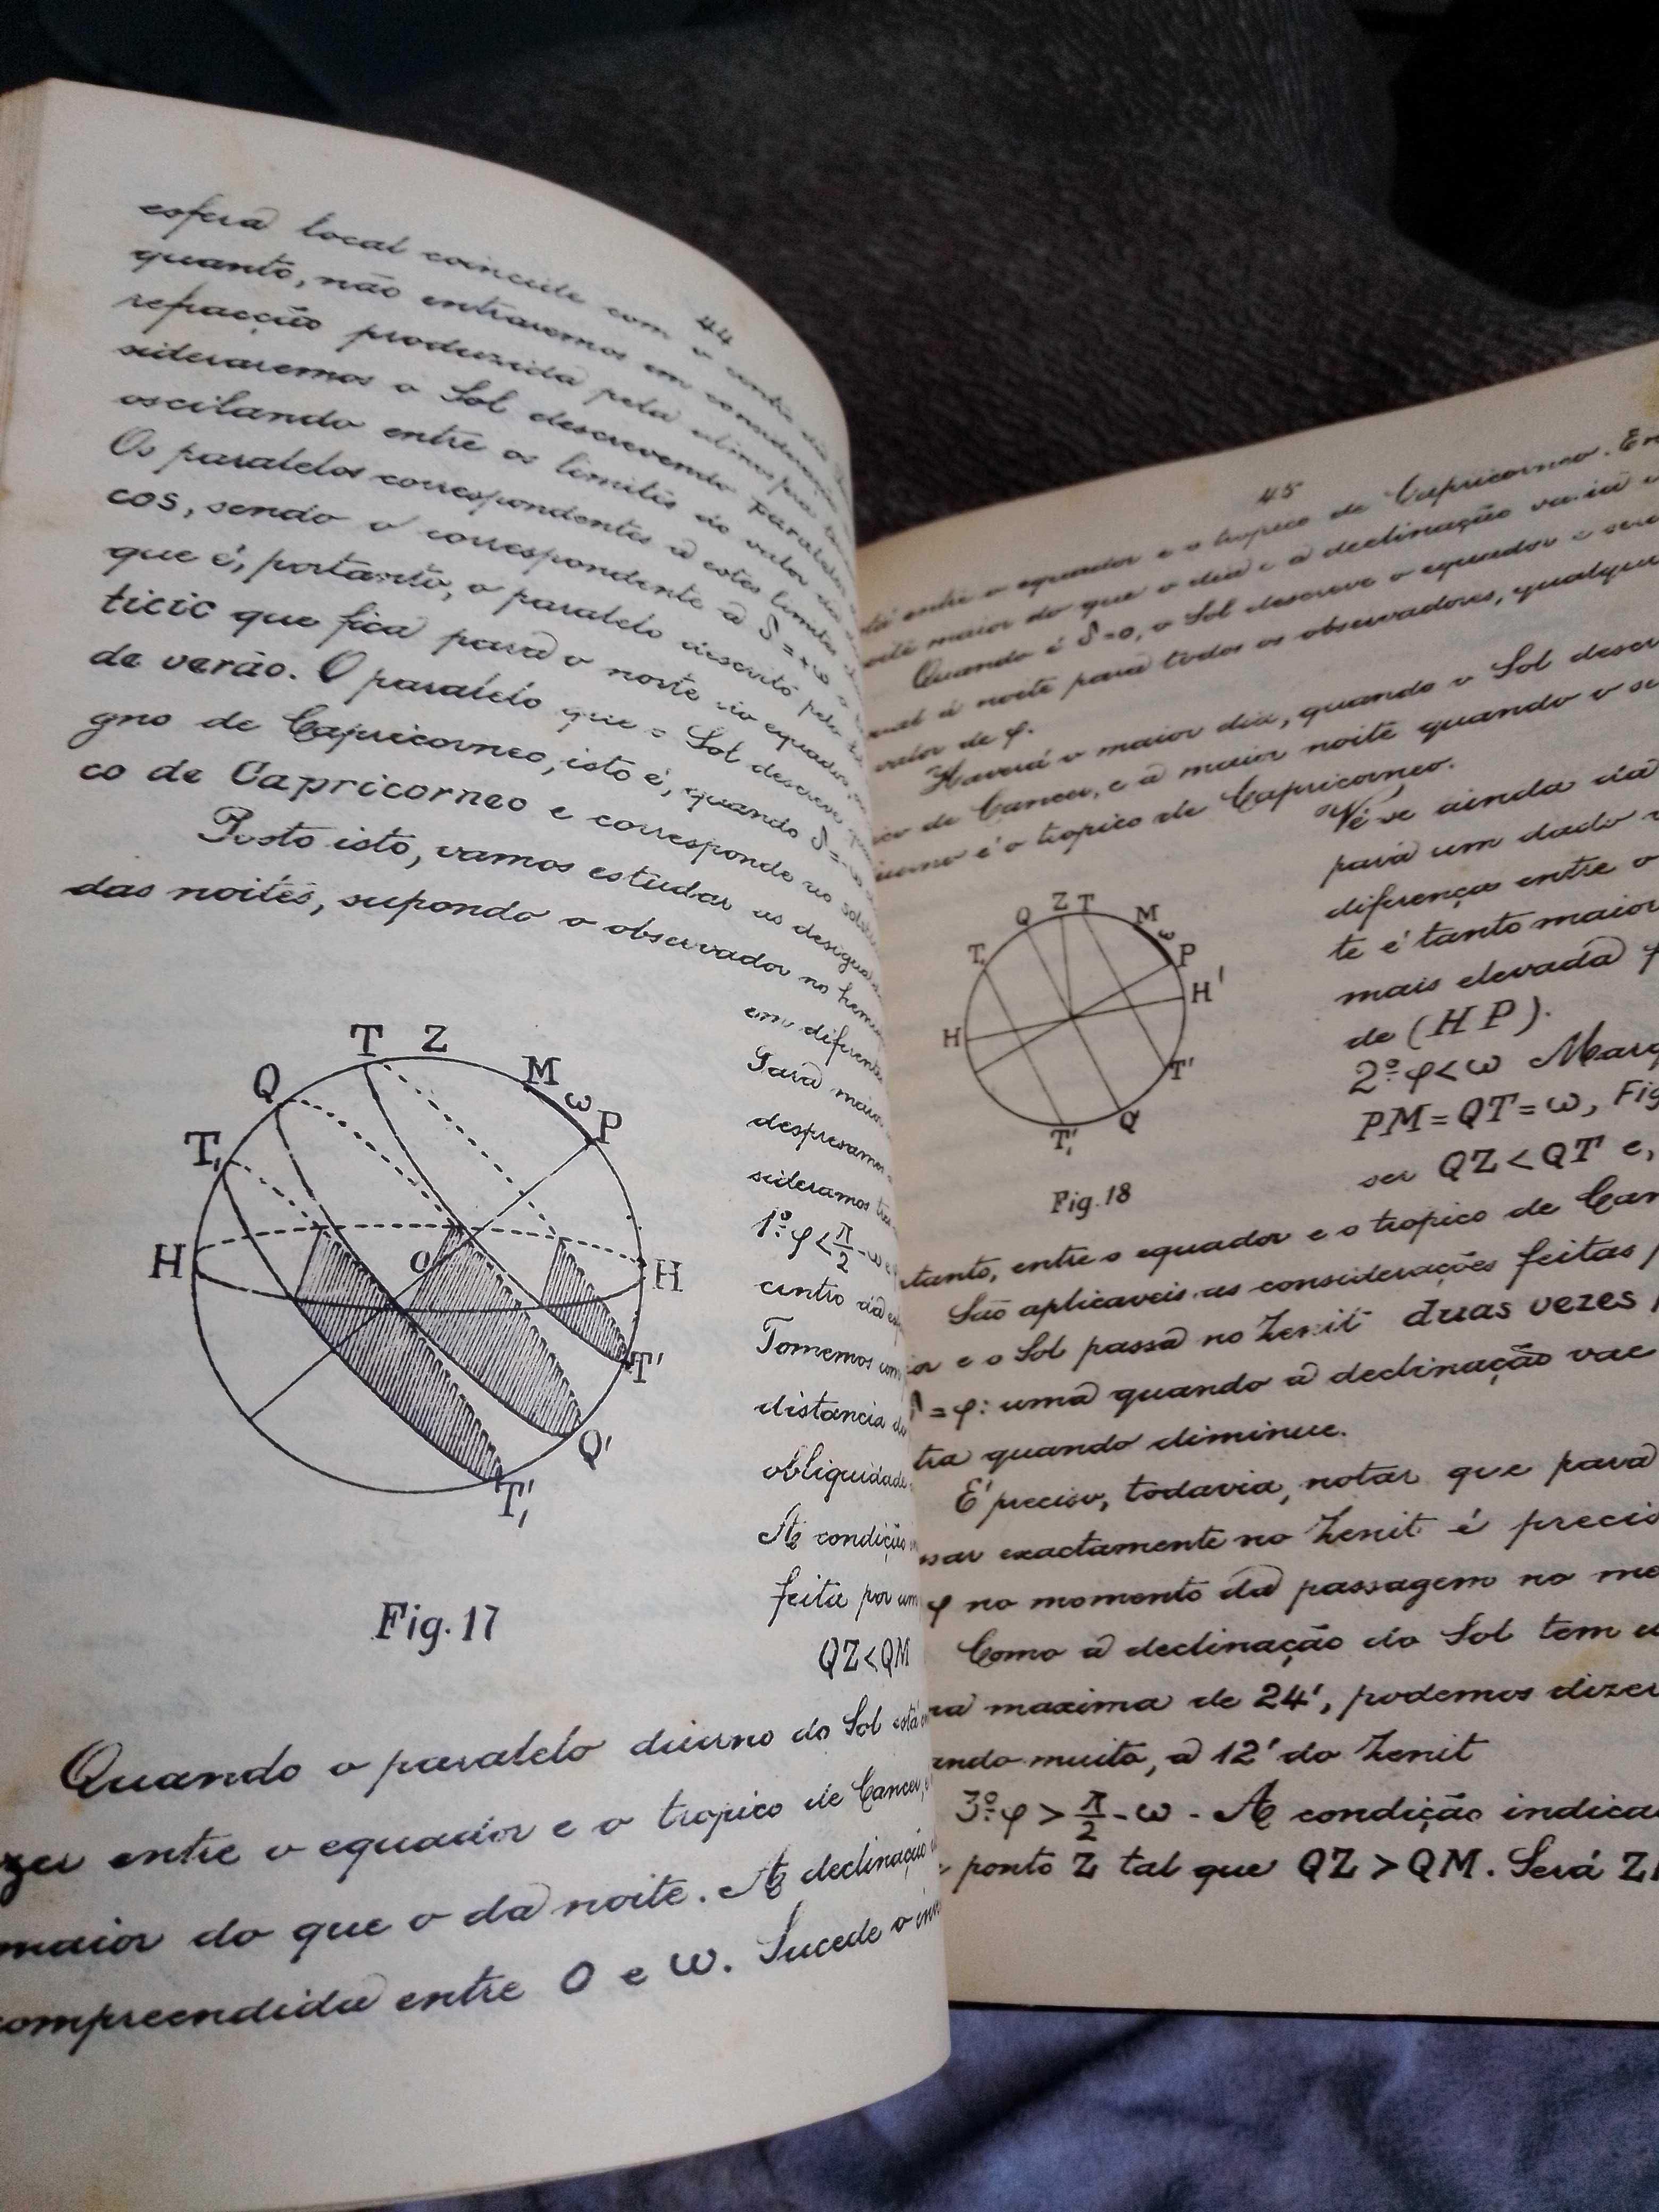 livro história breve da astrónautica oferta de elementos de astronomia